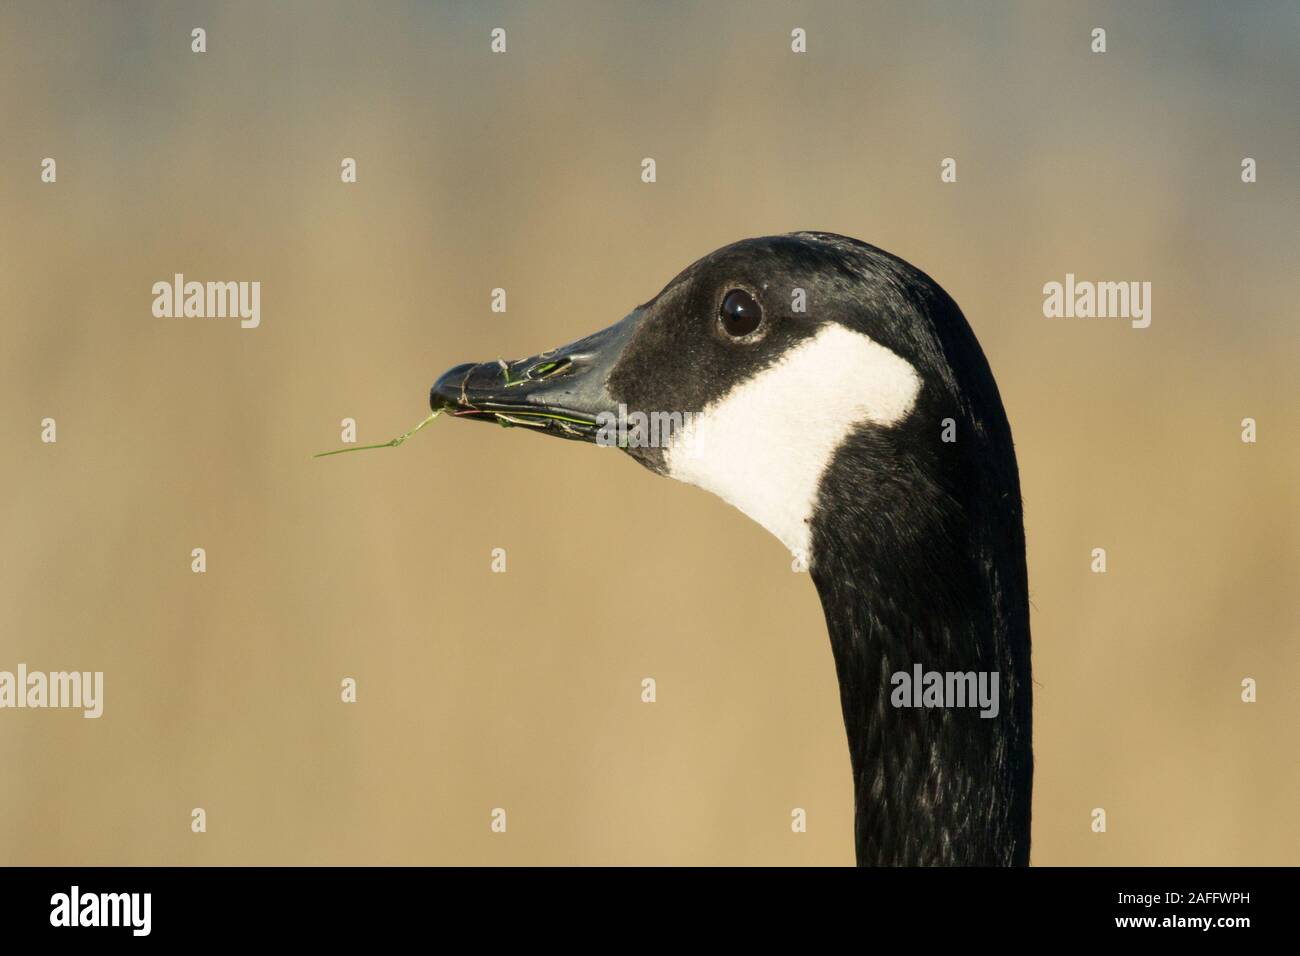 Canada Goose (Branta canadensis) della testa e del collo di profilo sulla giornata autunnale. Mostra distintivo faccia nera con il bianco dal sottogola. Erba nel becco. Foto Stock